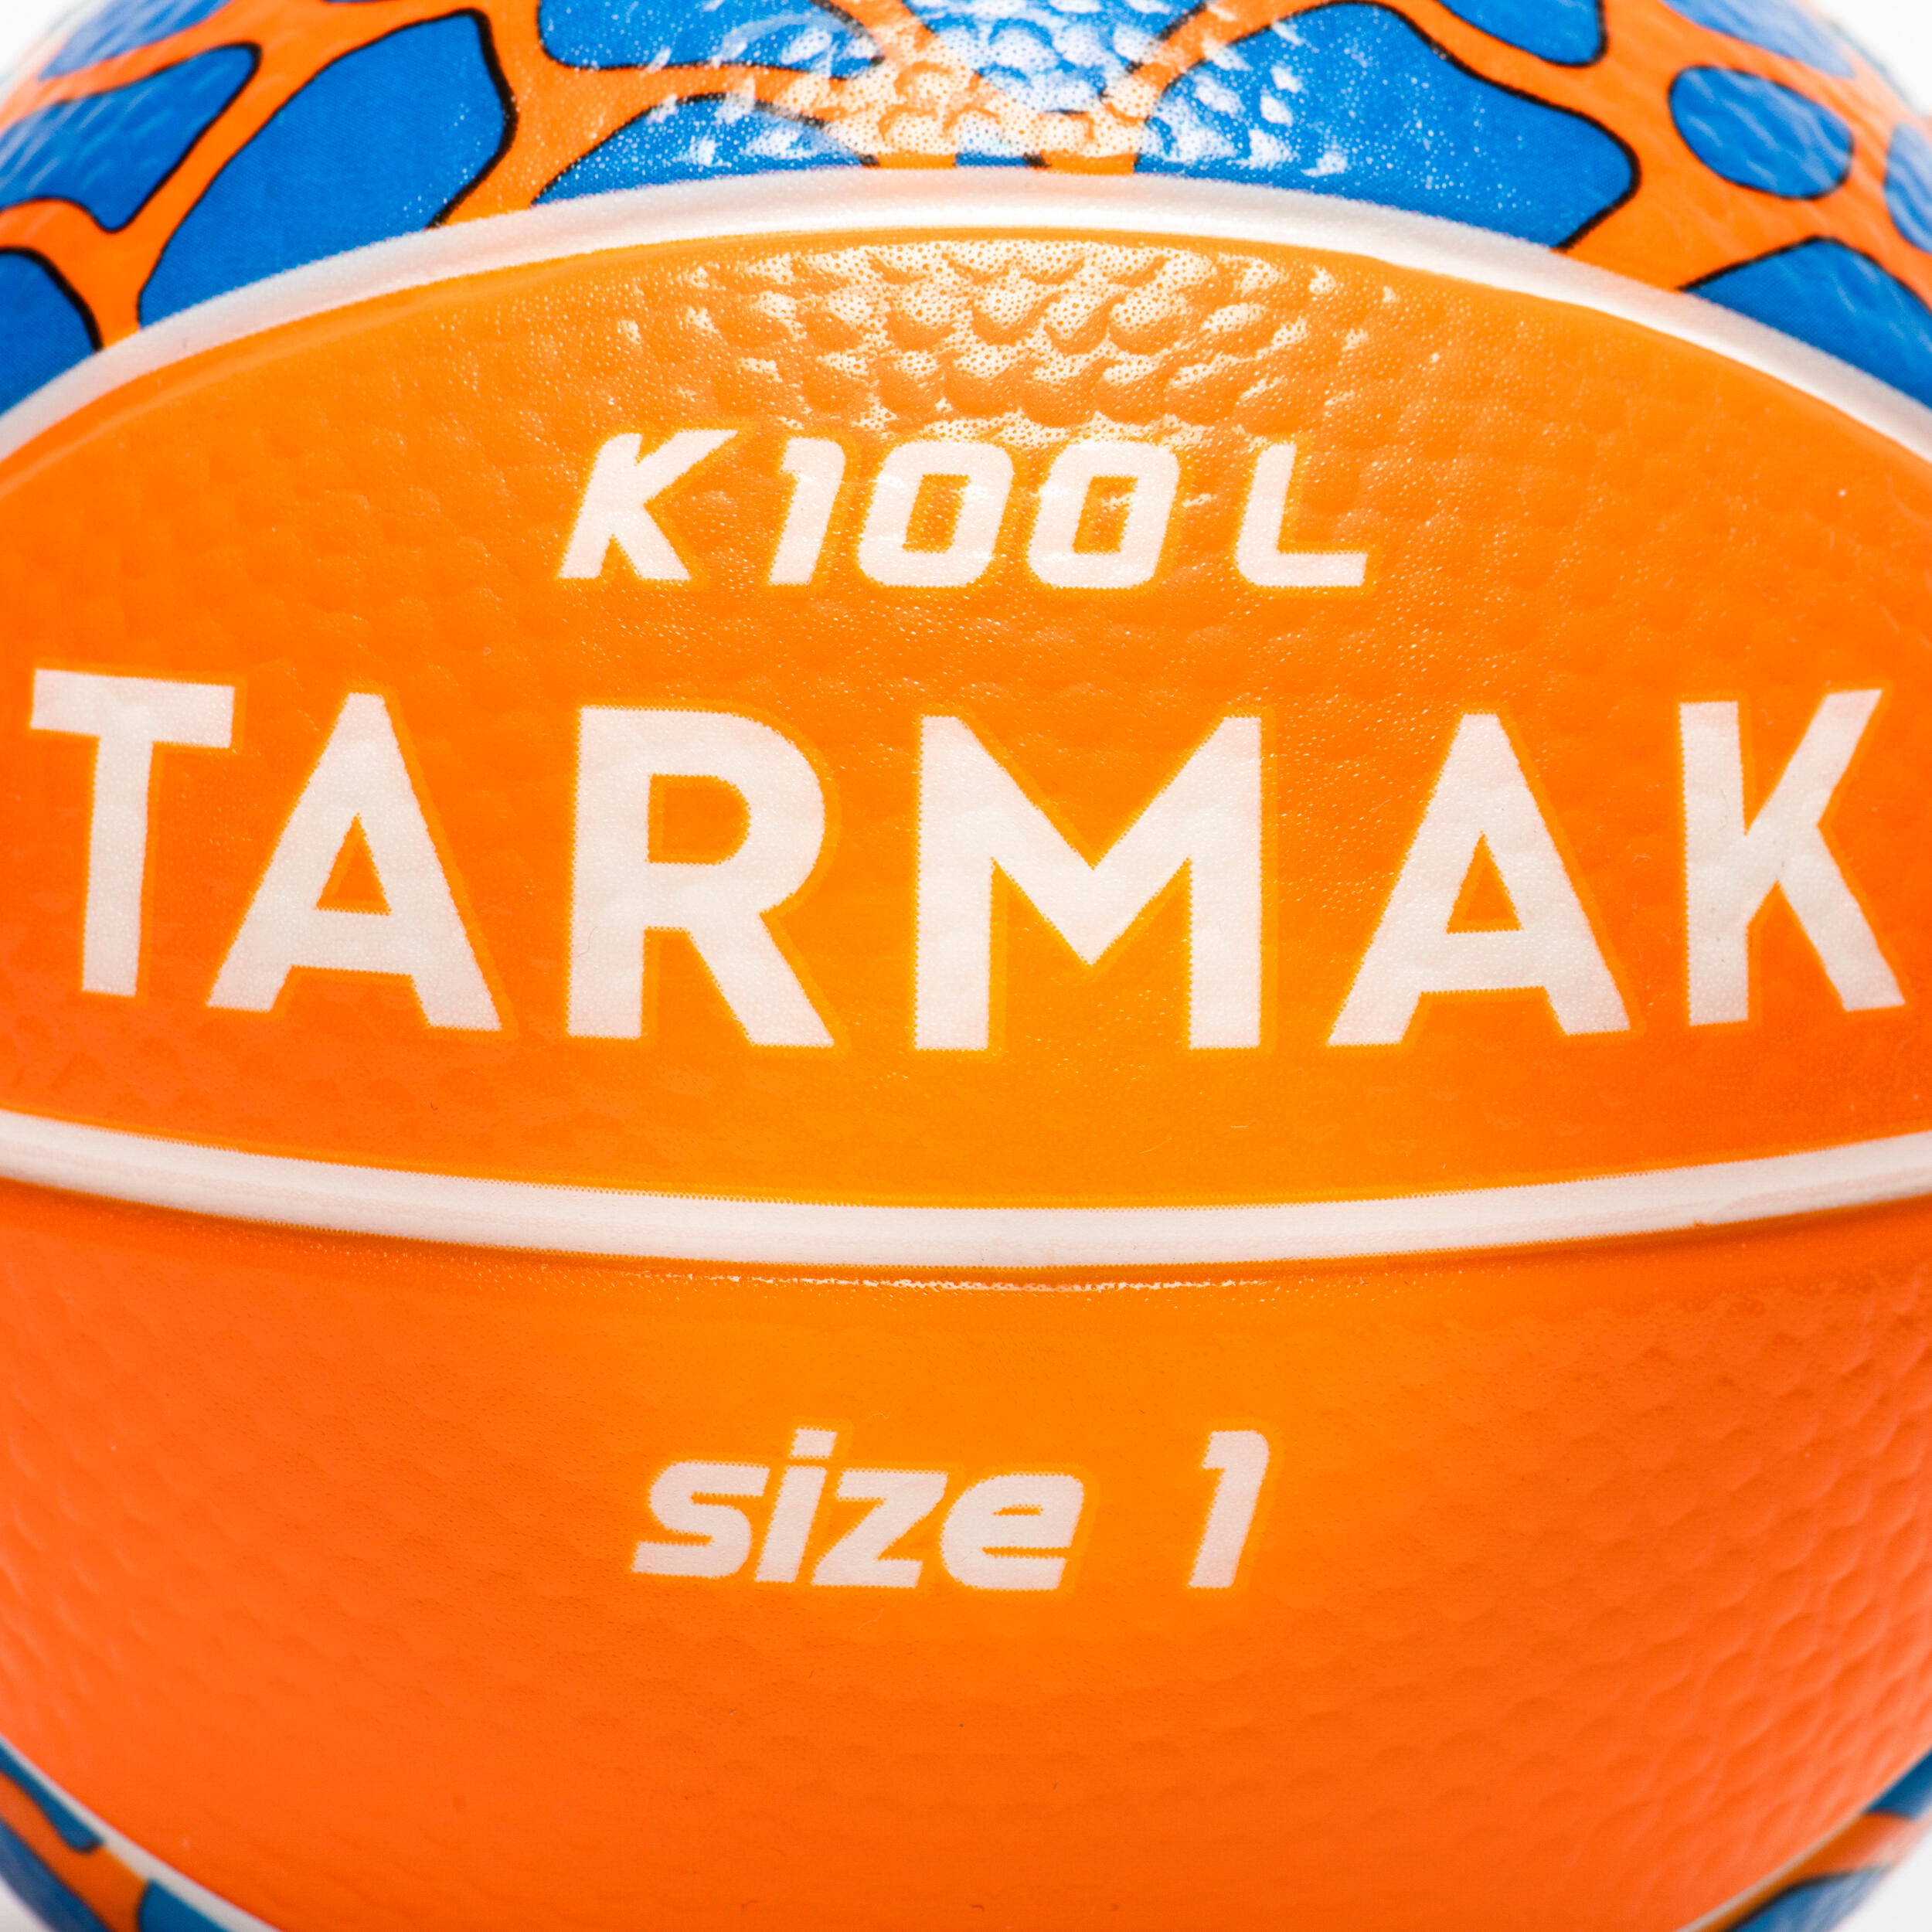 Kids' Size 1 Mini Foam Basketball K100 - Orange/Blue 3/5